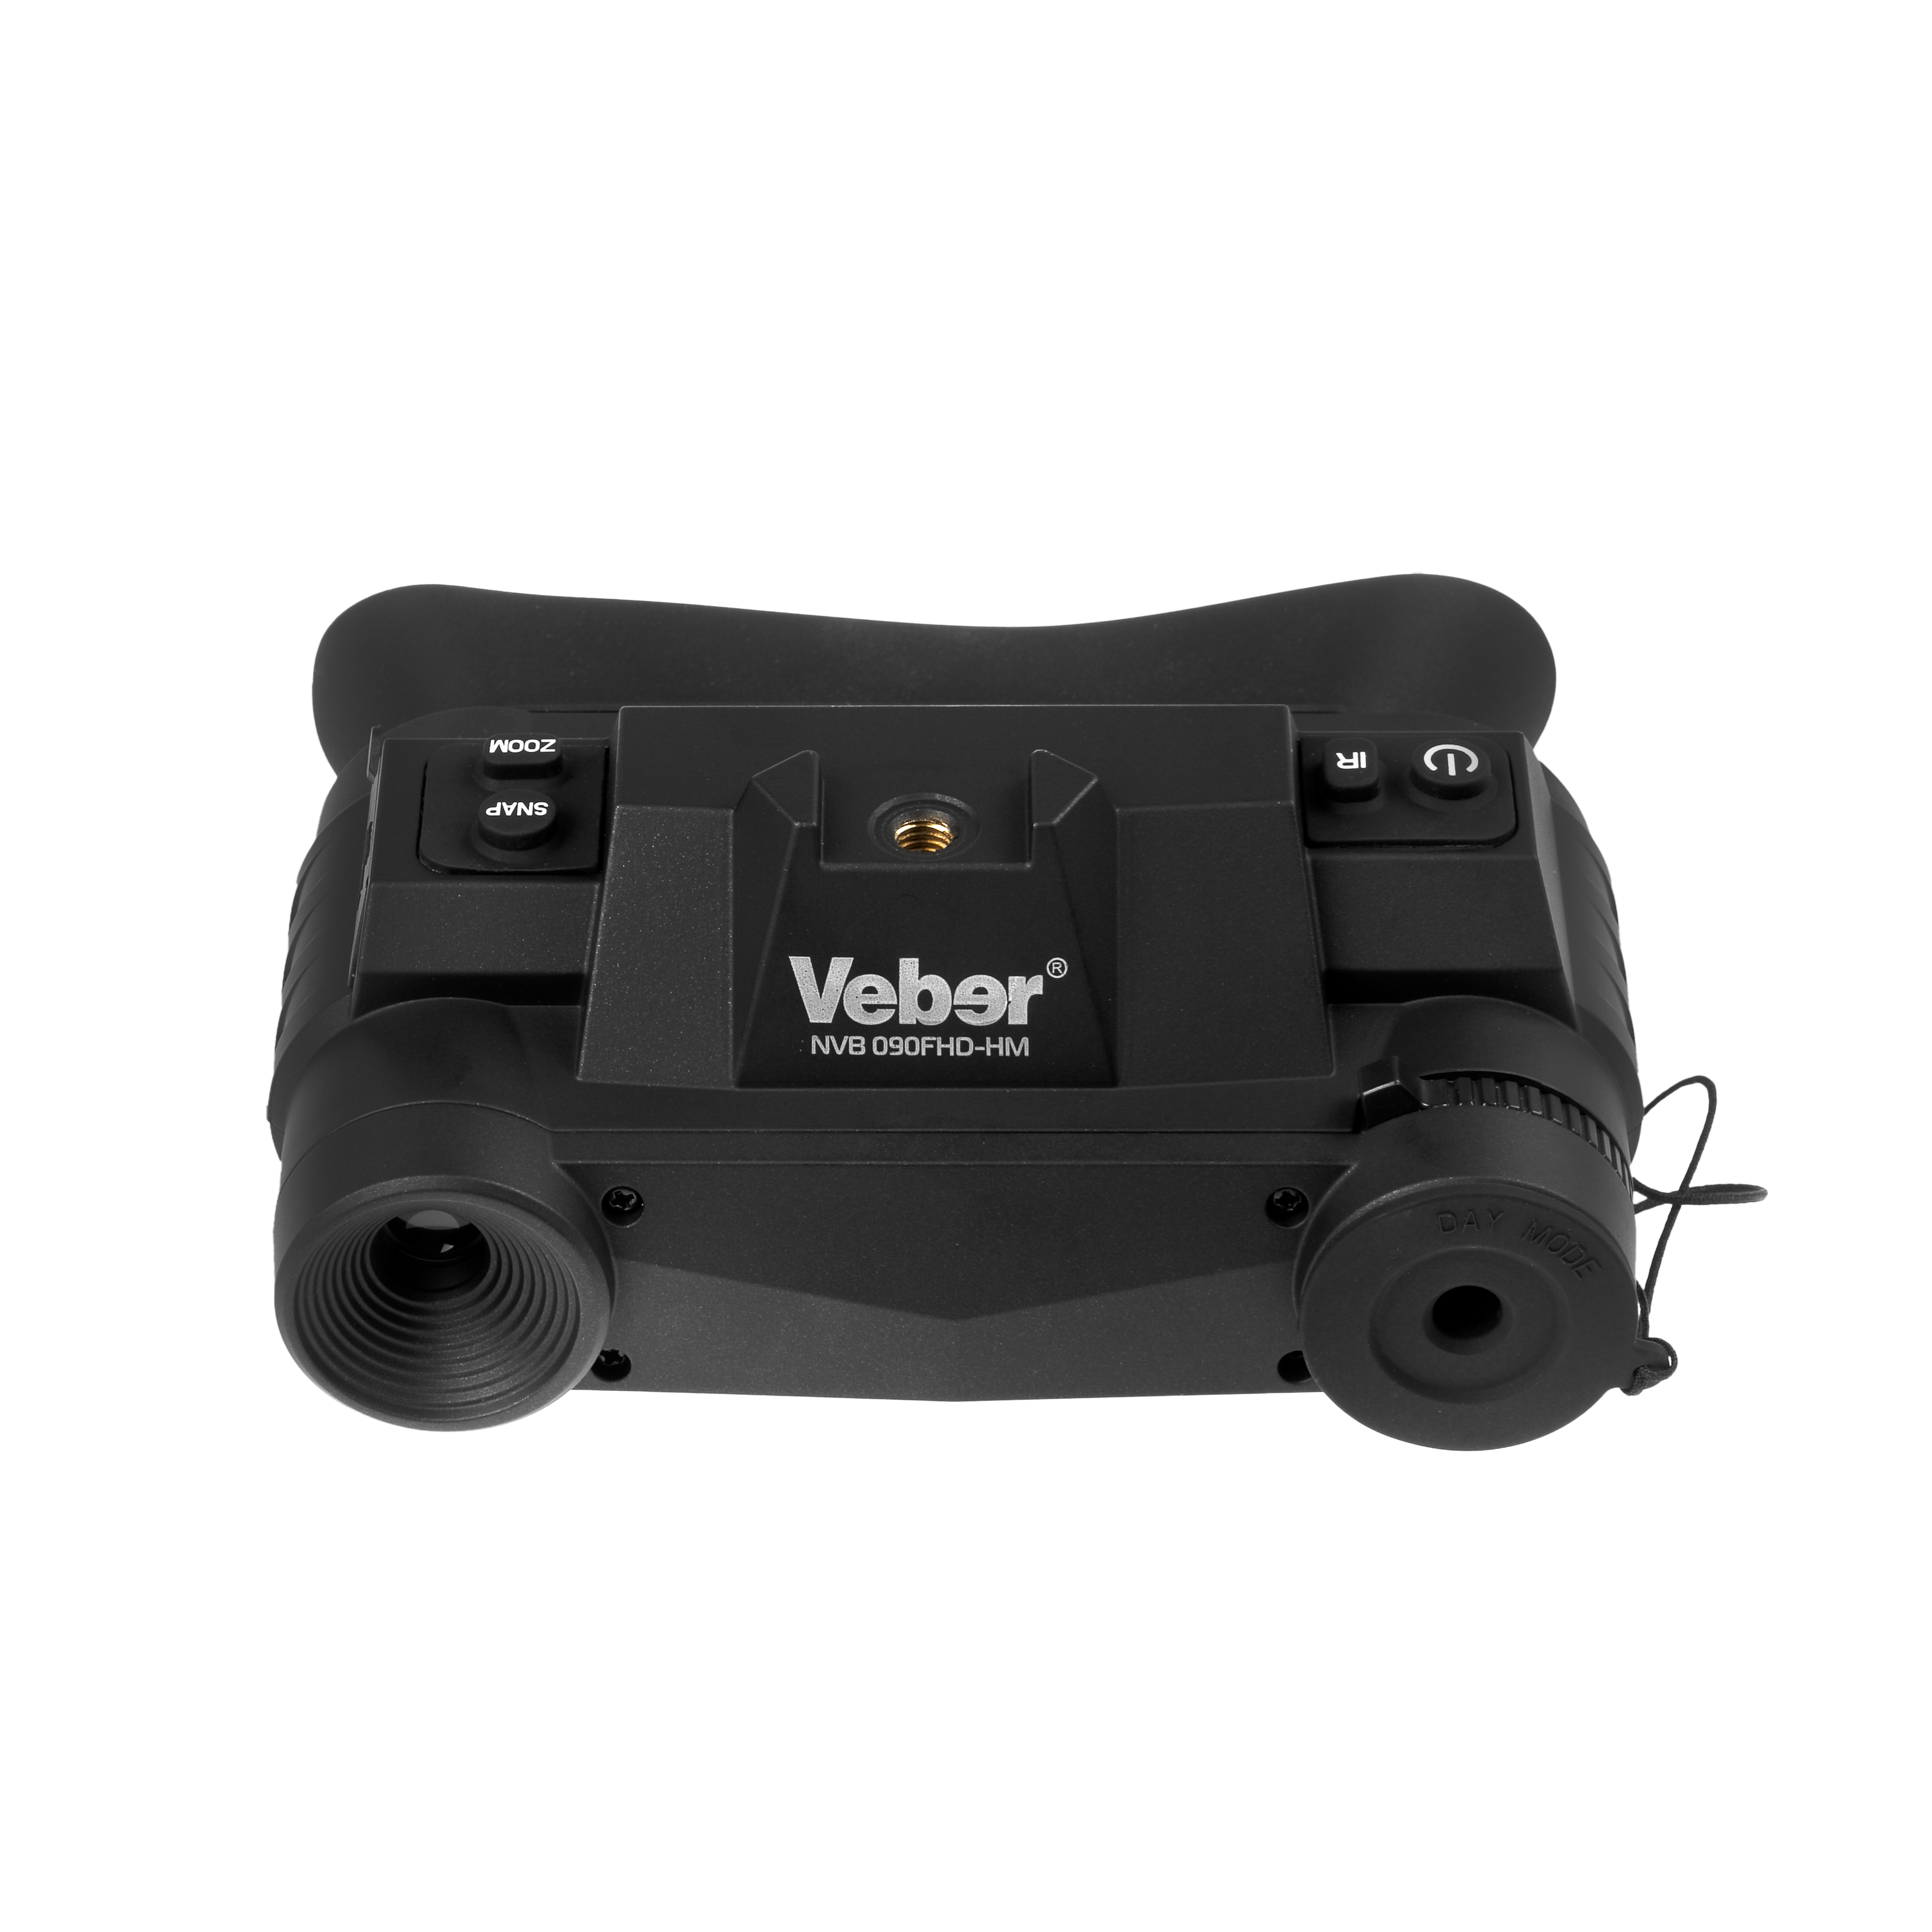       Veber NVB 090FHD-HM    Ultra-mart